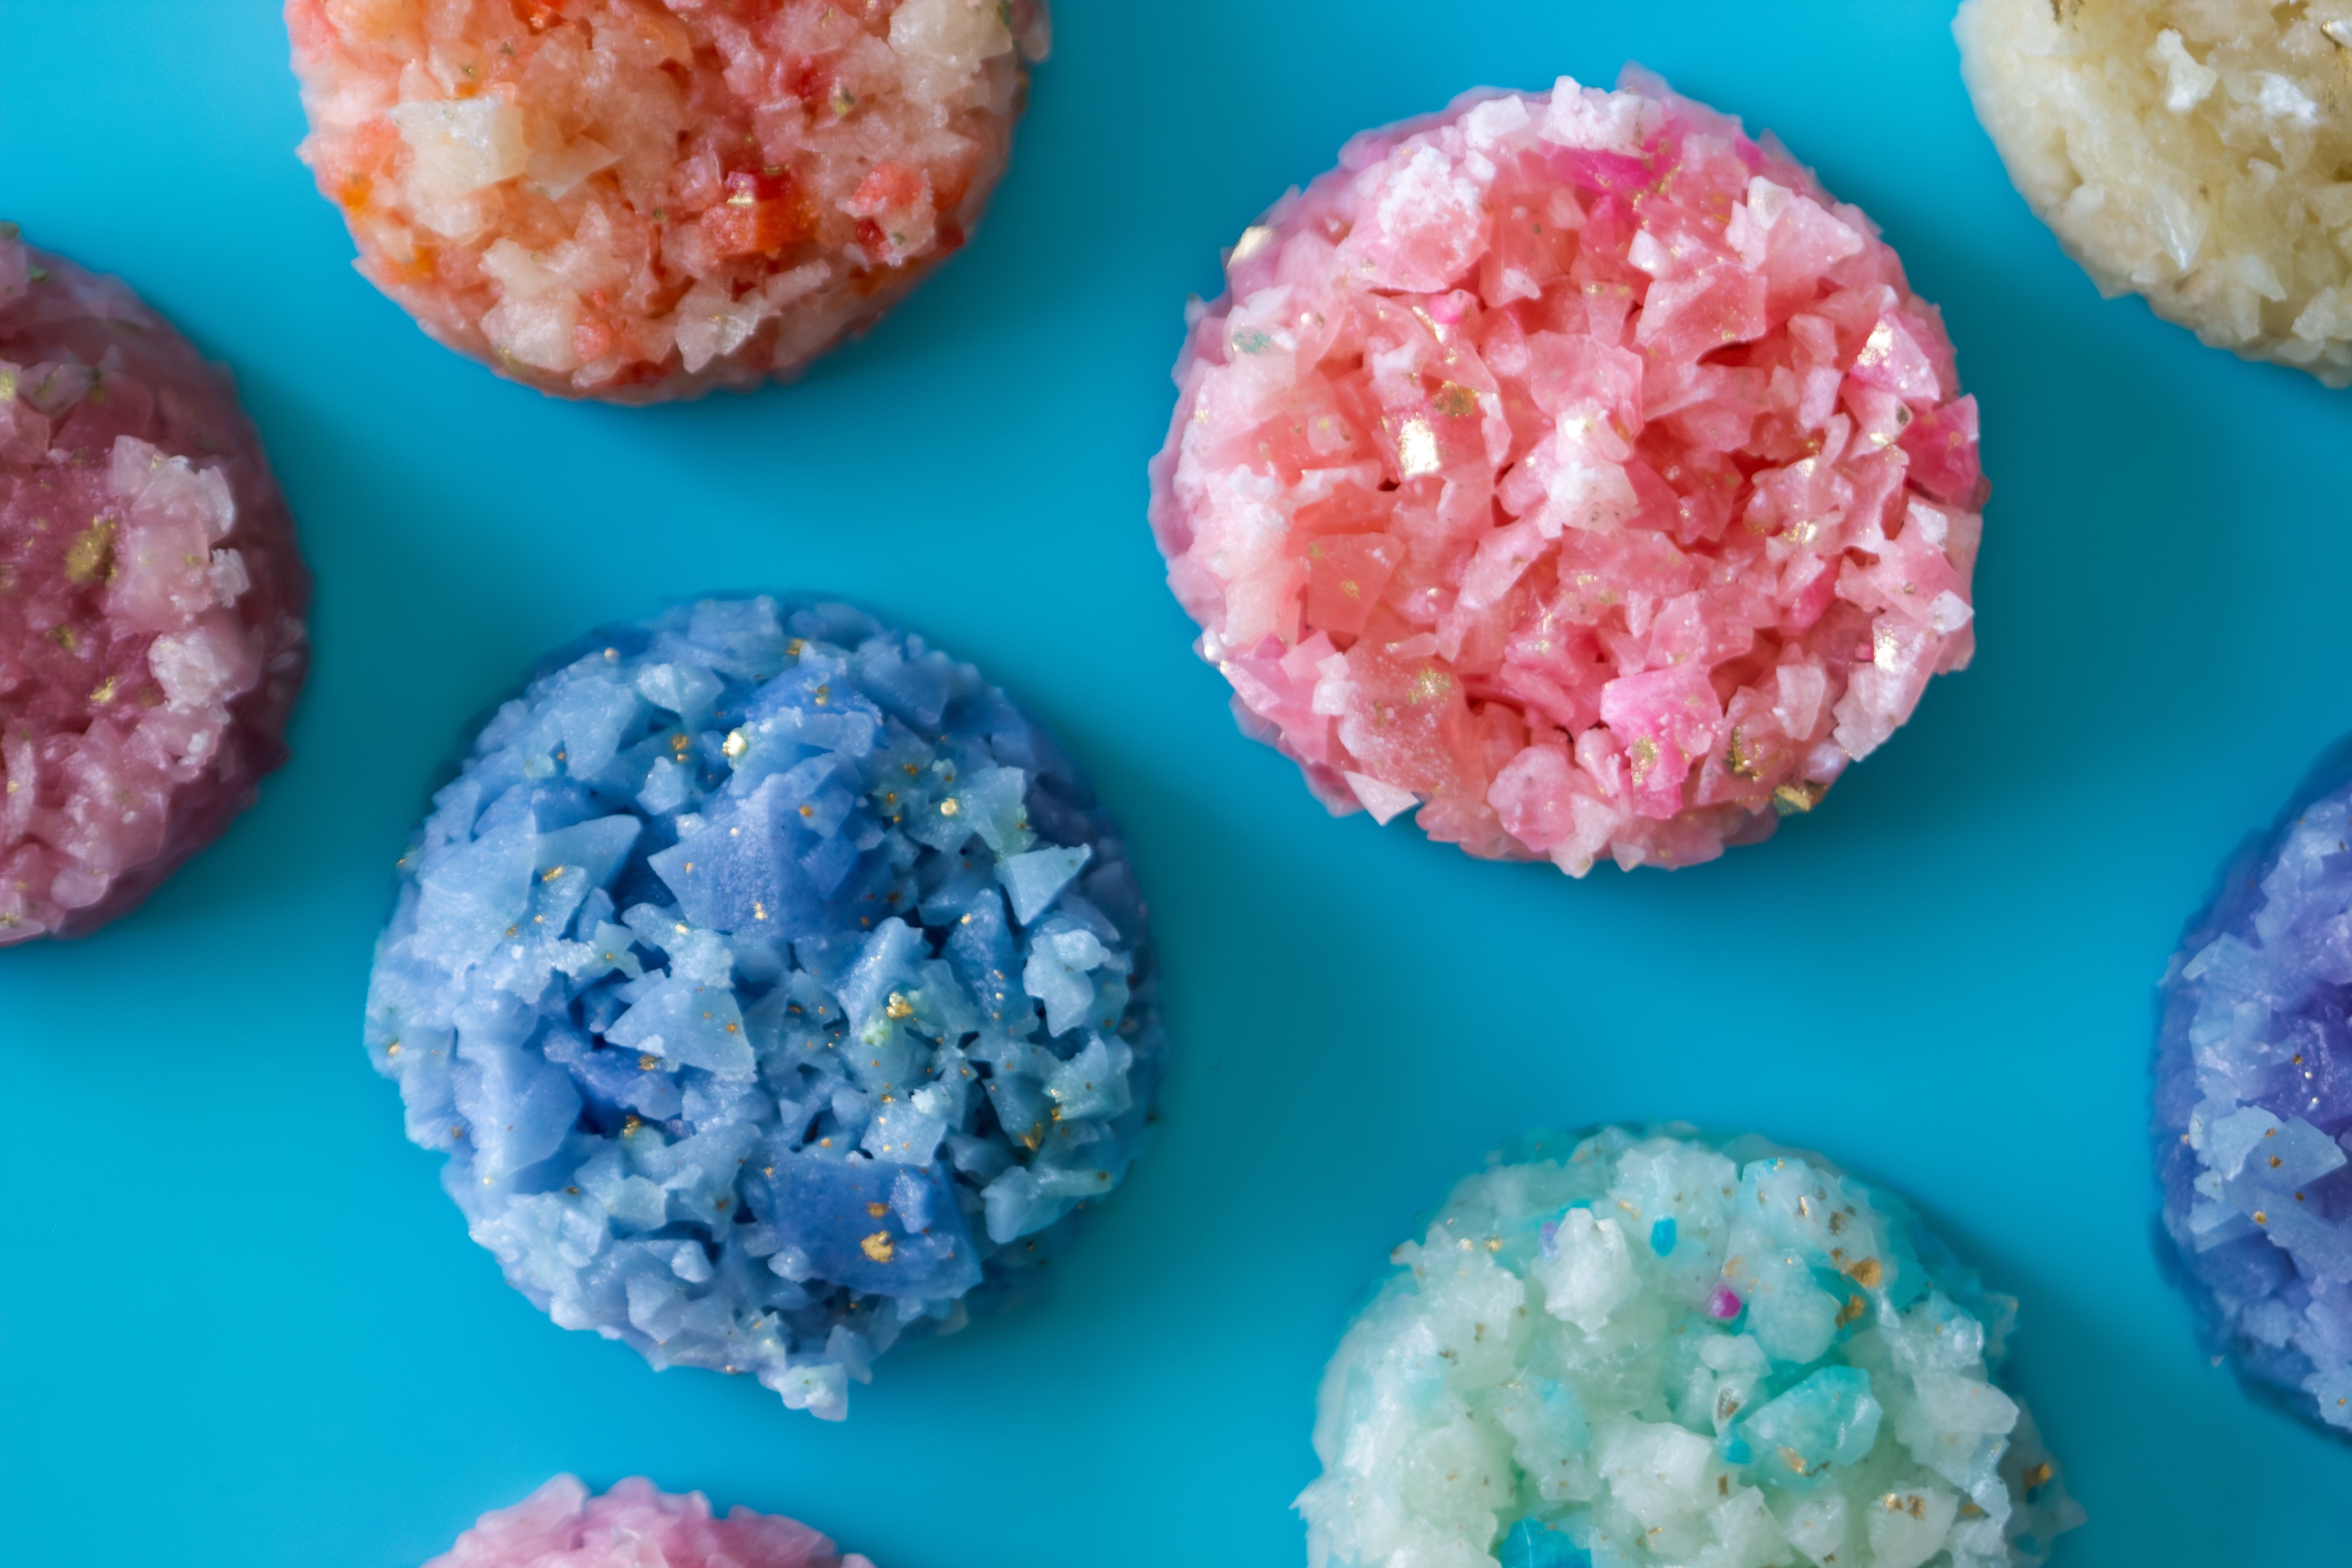 Mint Edible Crystal – Quartz Boutique